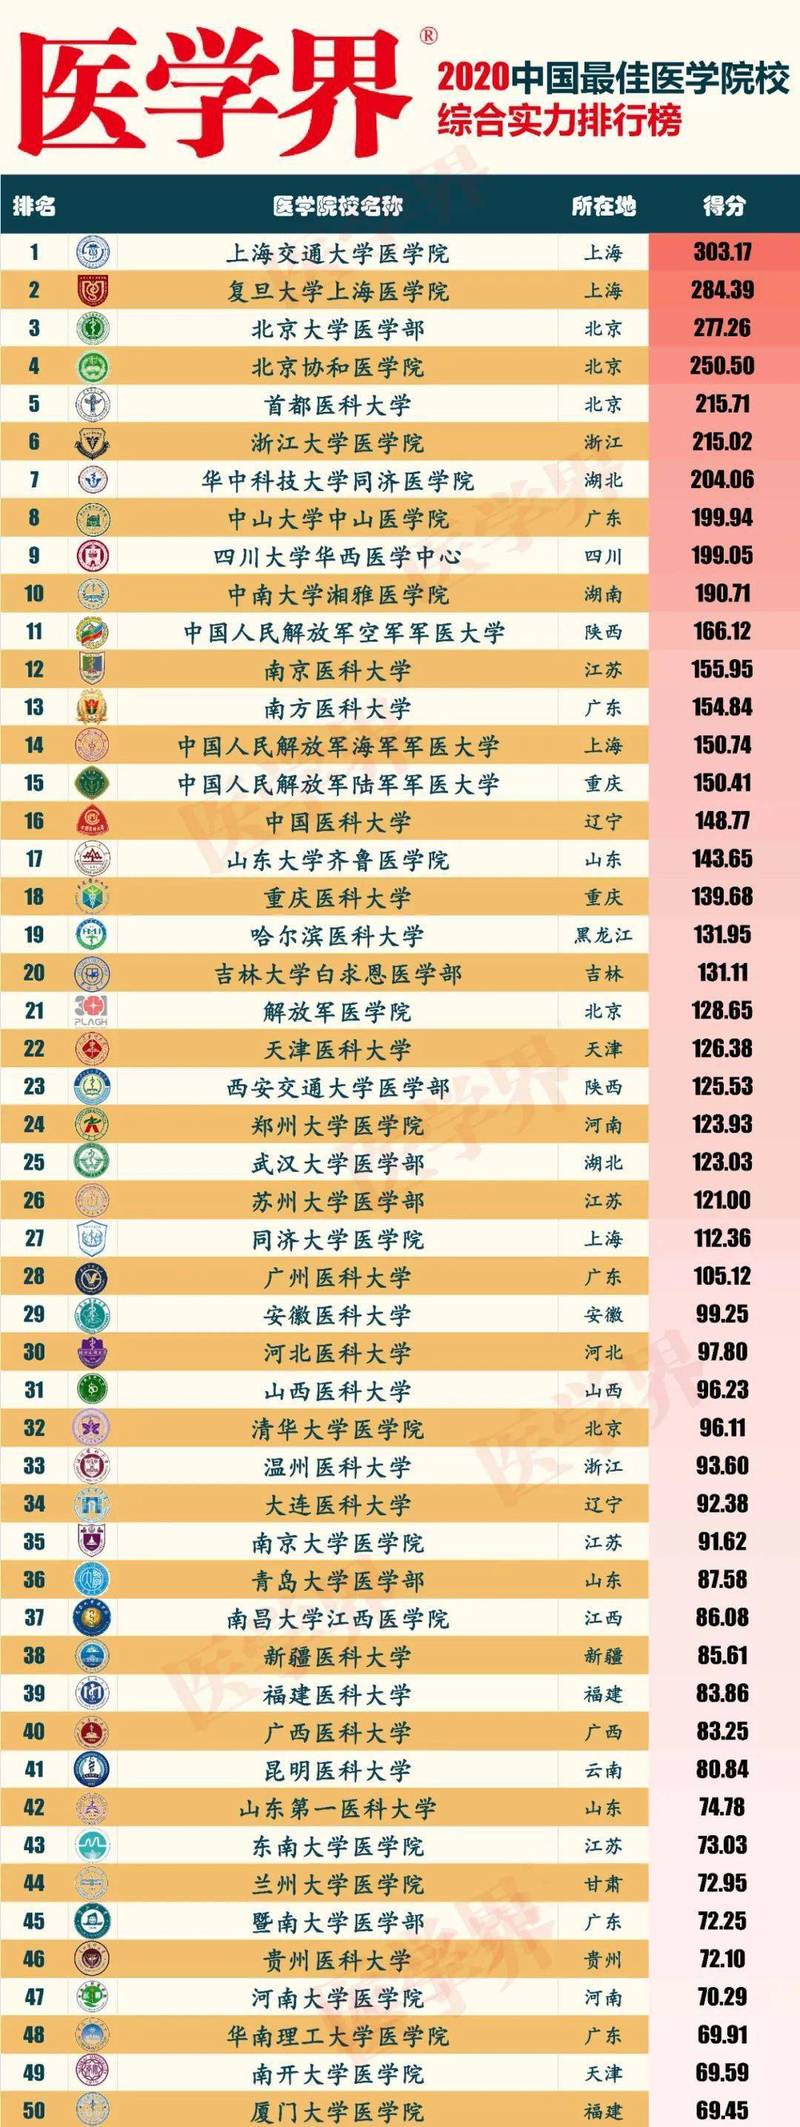 医学院校哪家强?2020中国最佳医学院排行榜发布